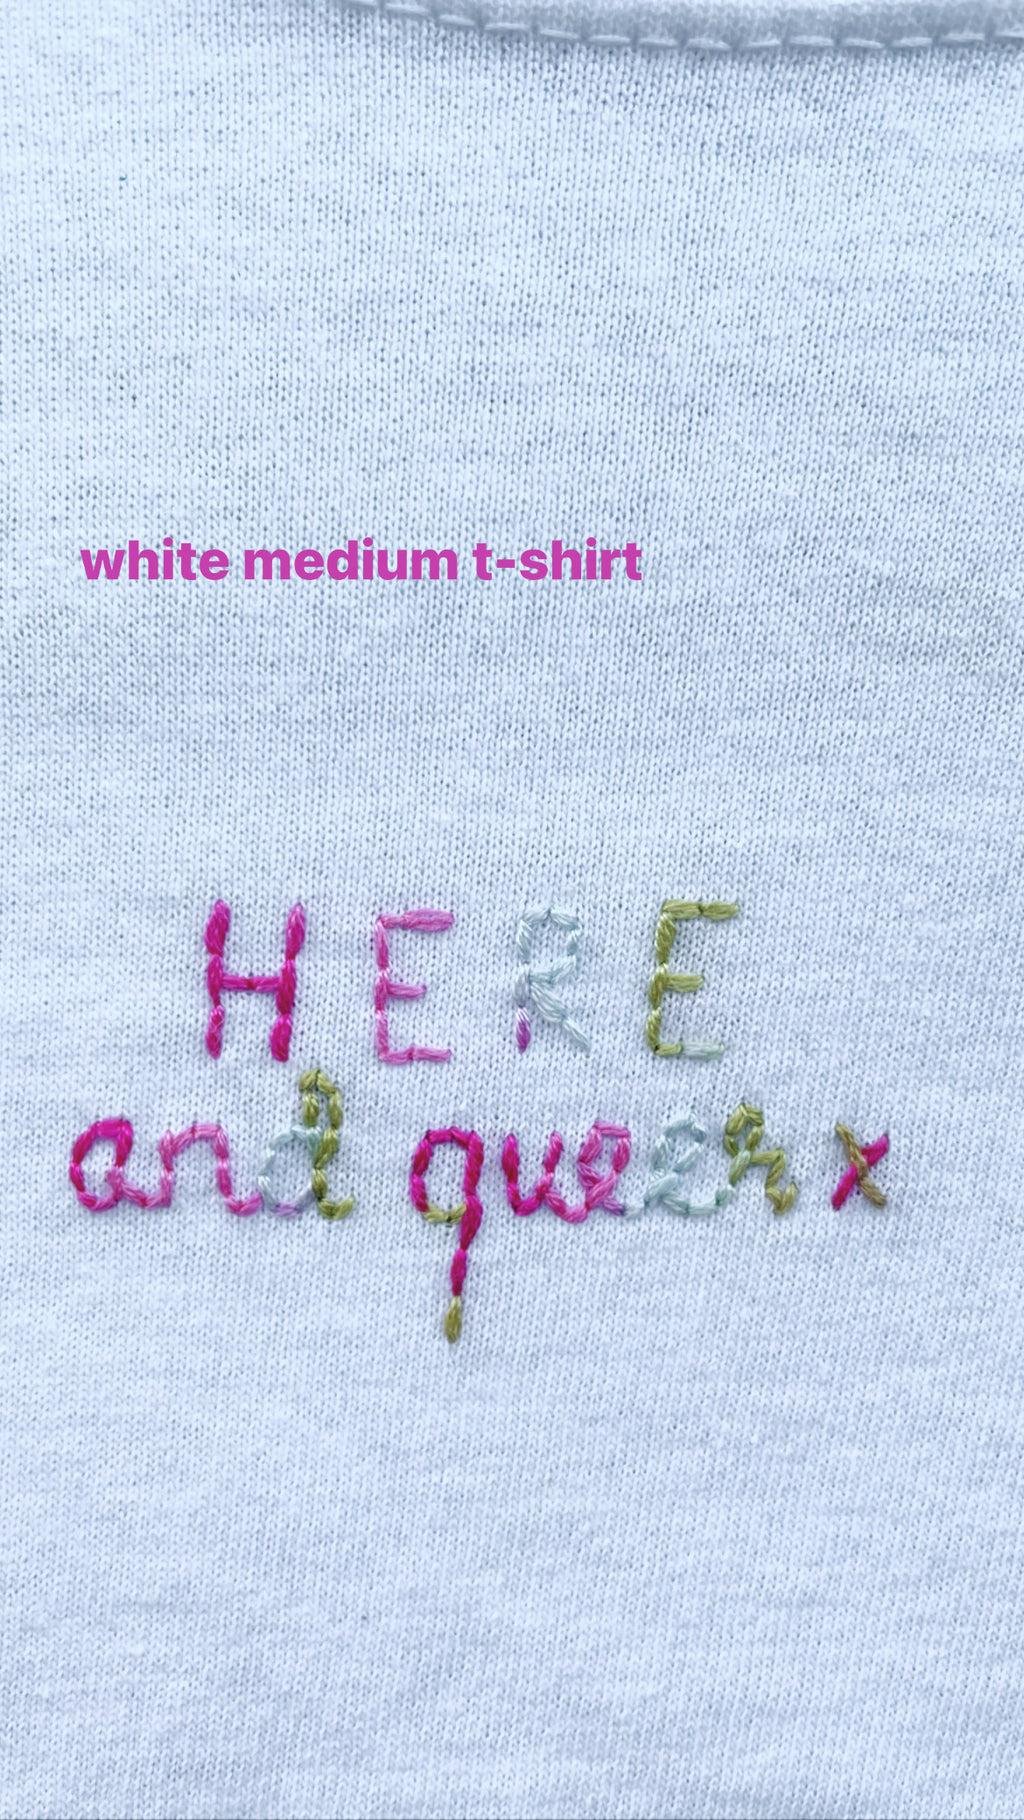 HERE & QUEER - WHITE MEDIUM